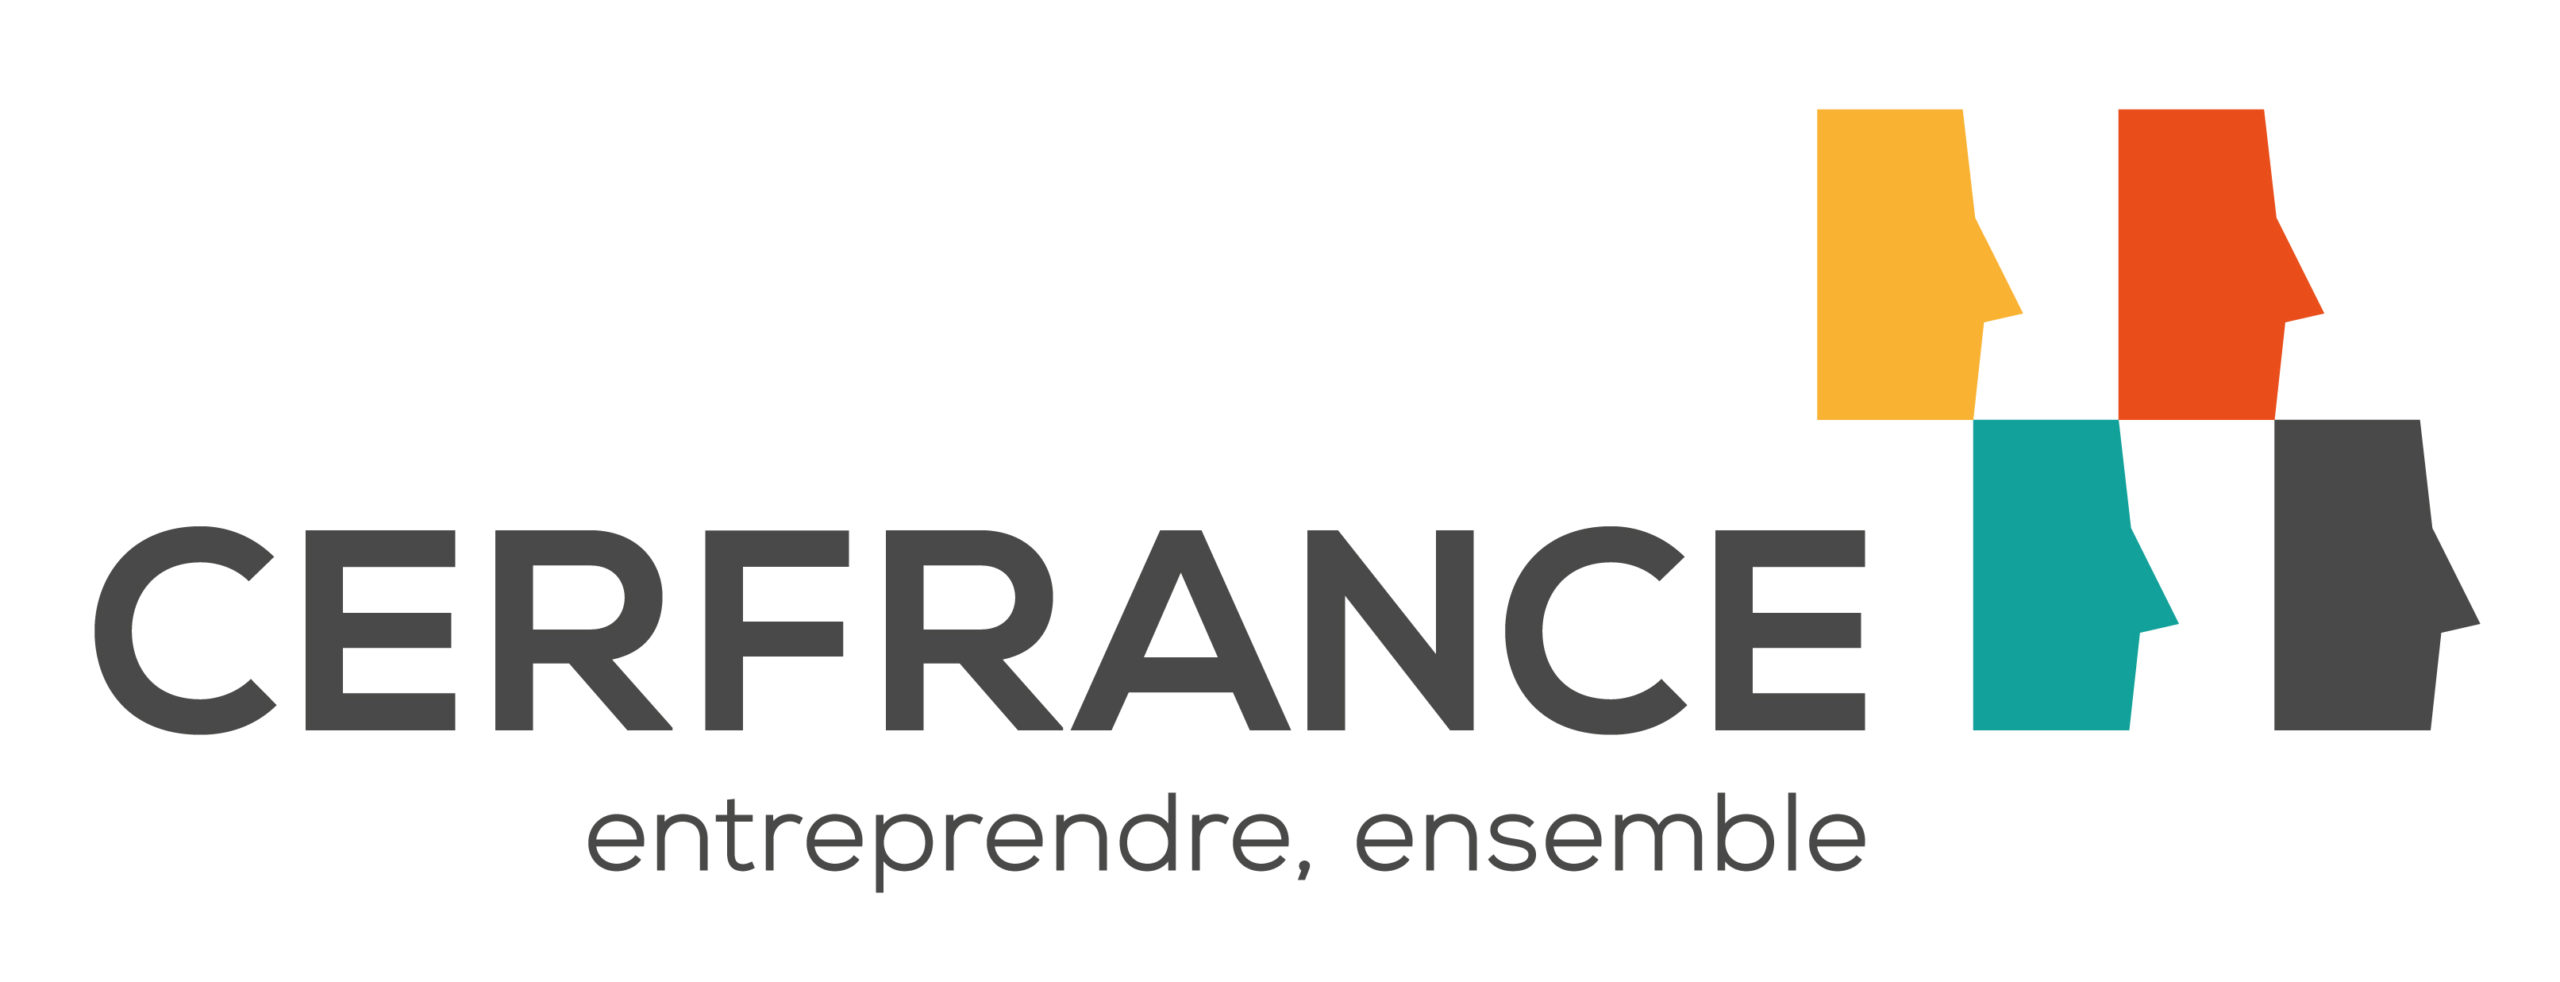 S MARK 330 – Logo Cerfrance – Entreprendre, ensemble (2)